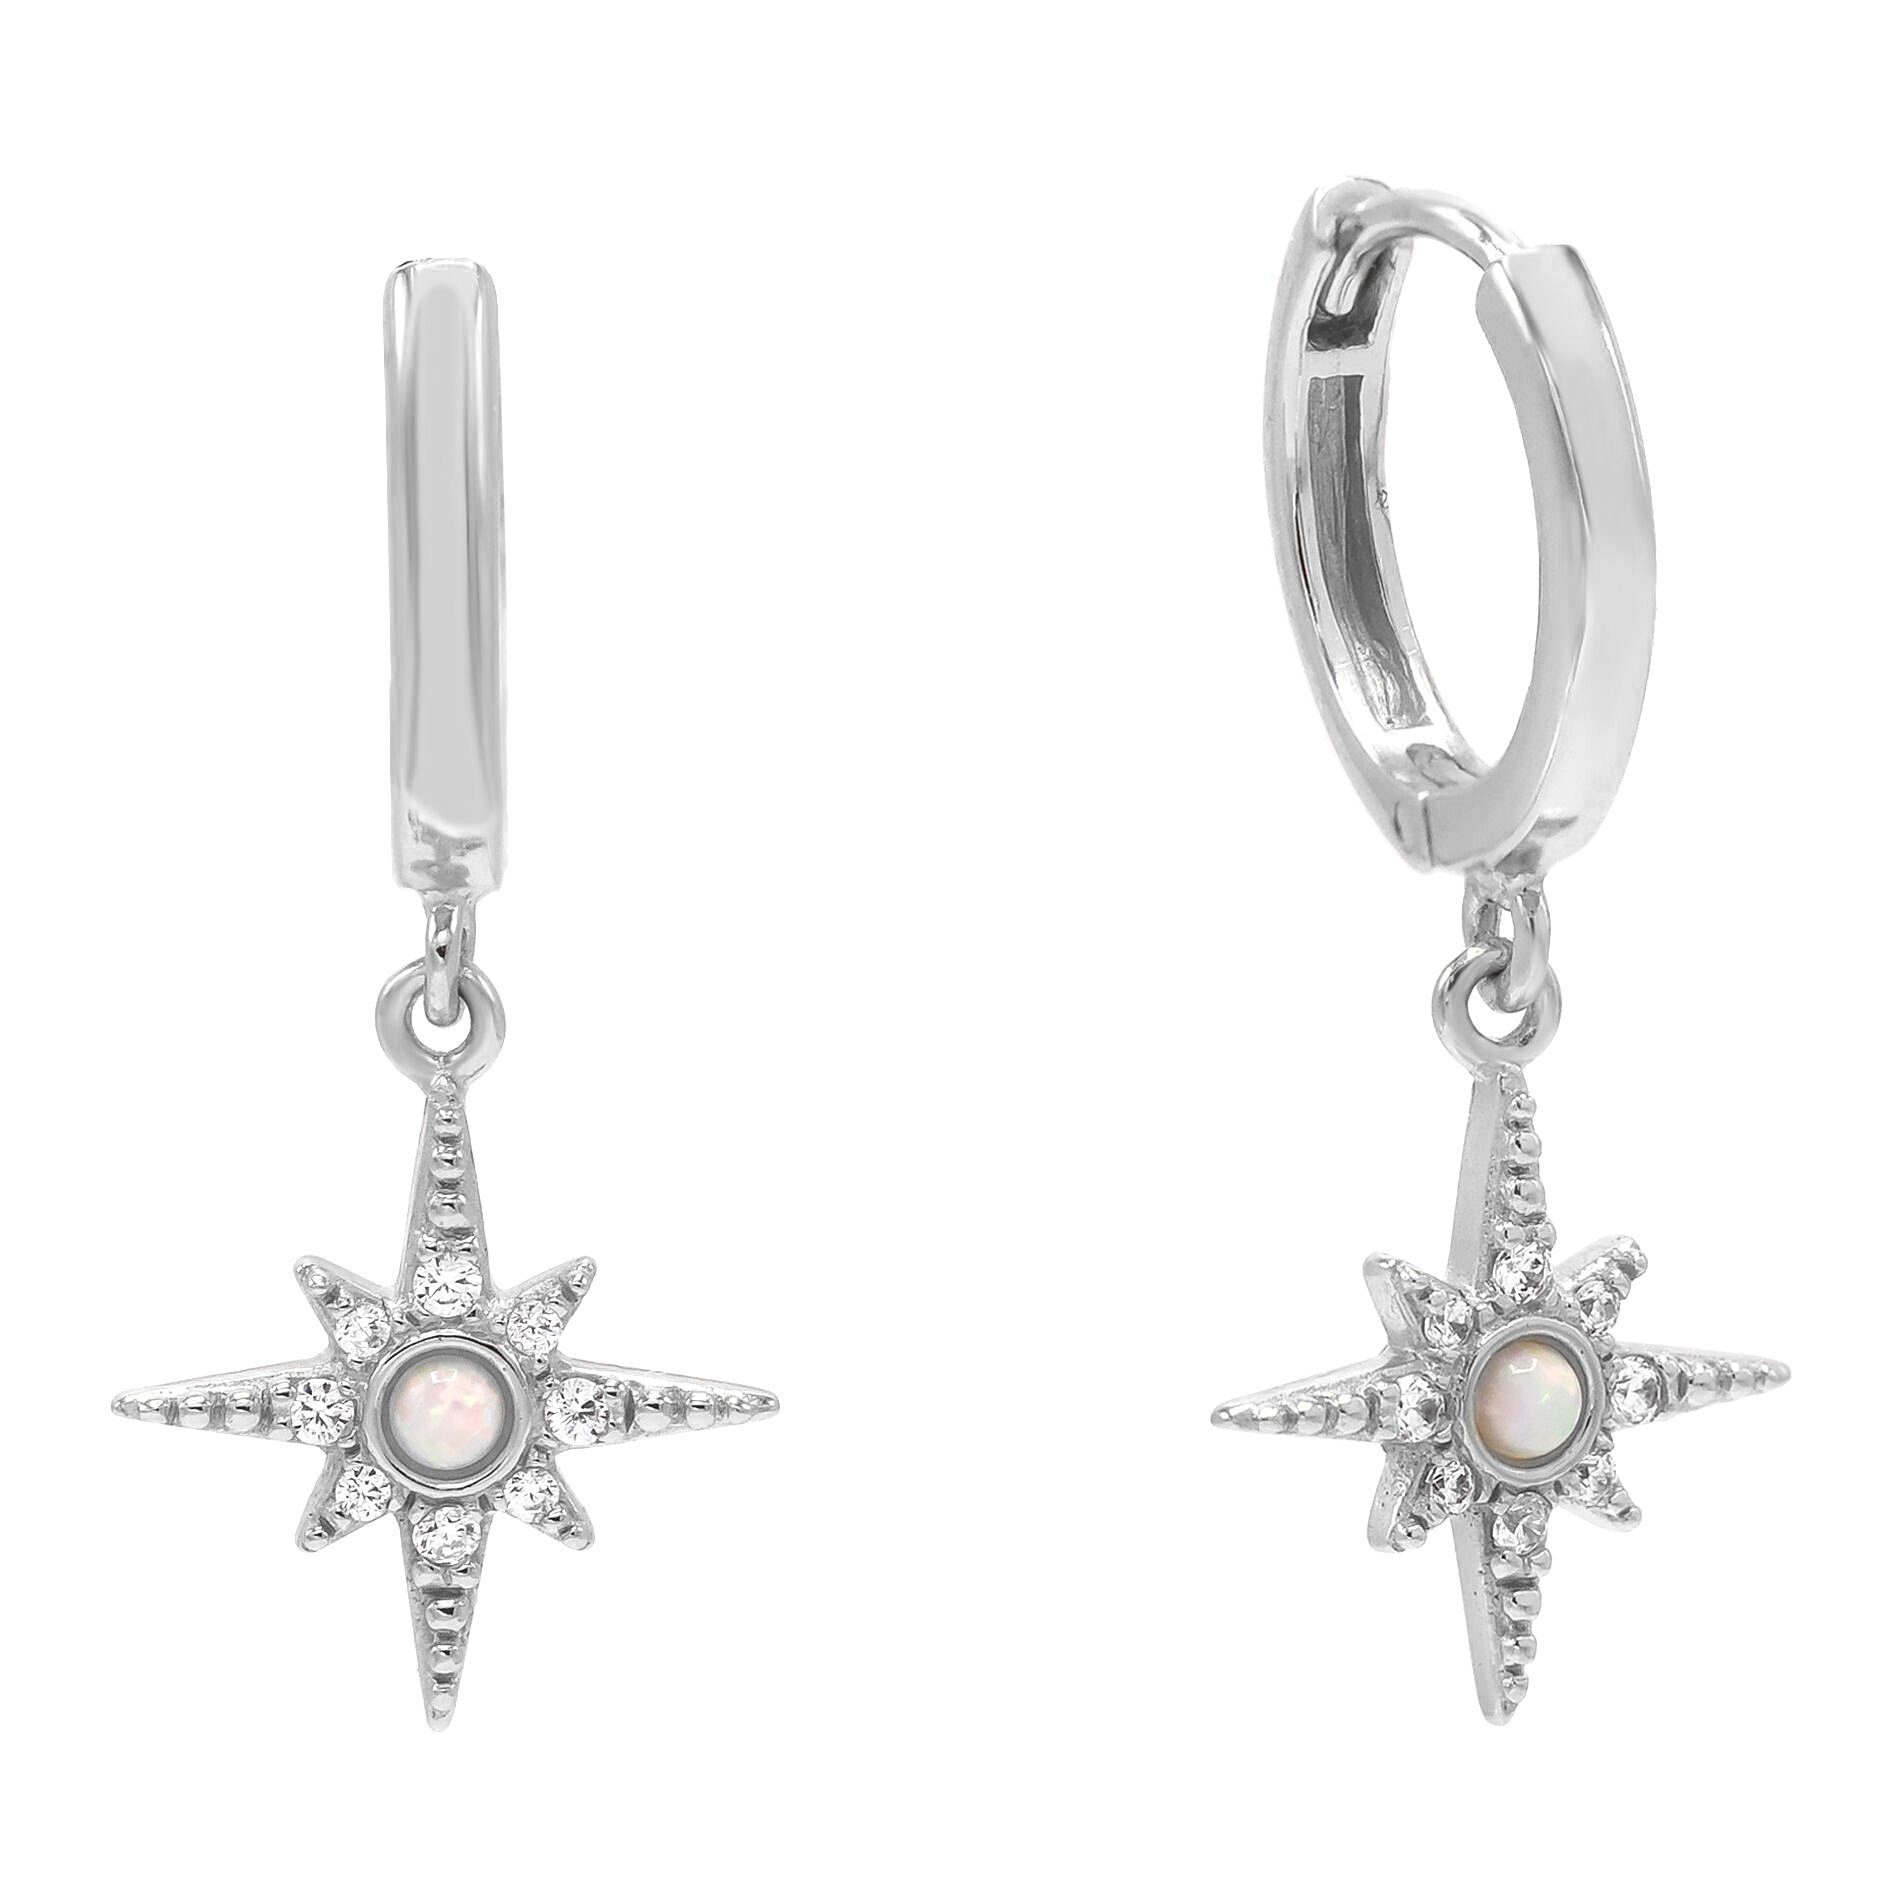 Brandlinger Paar Ohrhänger Ohrringe Adelaide, Stern Silber 925 vergoldet, Weißer Opal und weiße Zirkoniasteine